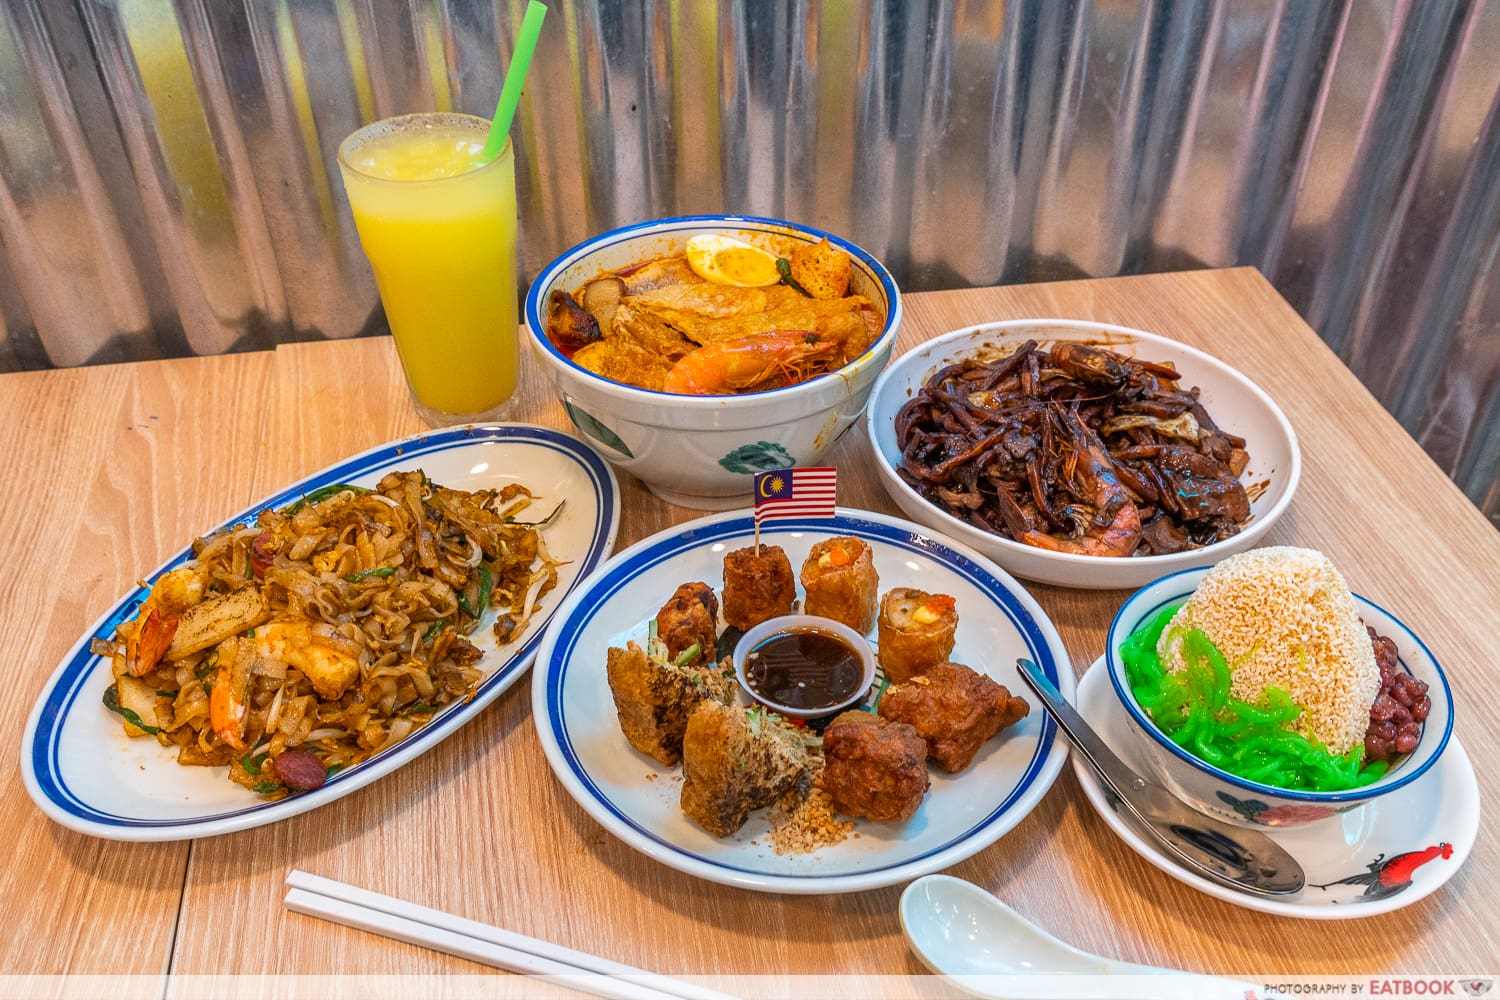 nanyang-dao-food-flatlay